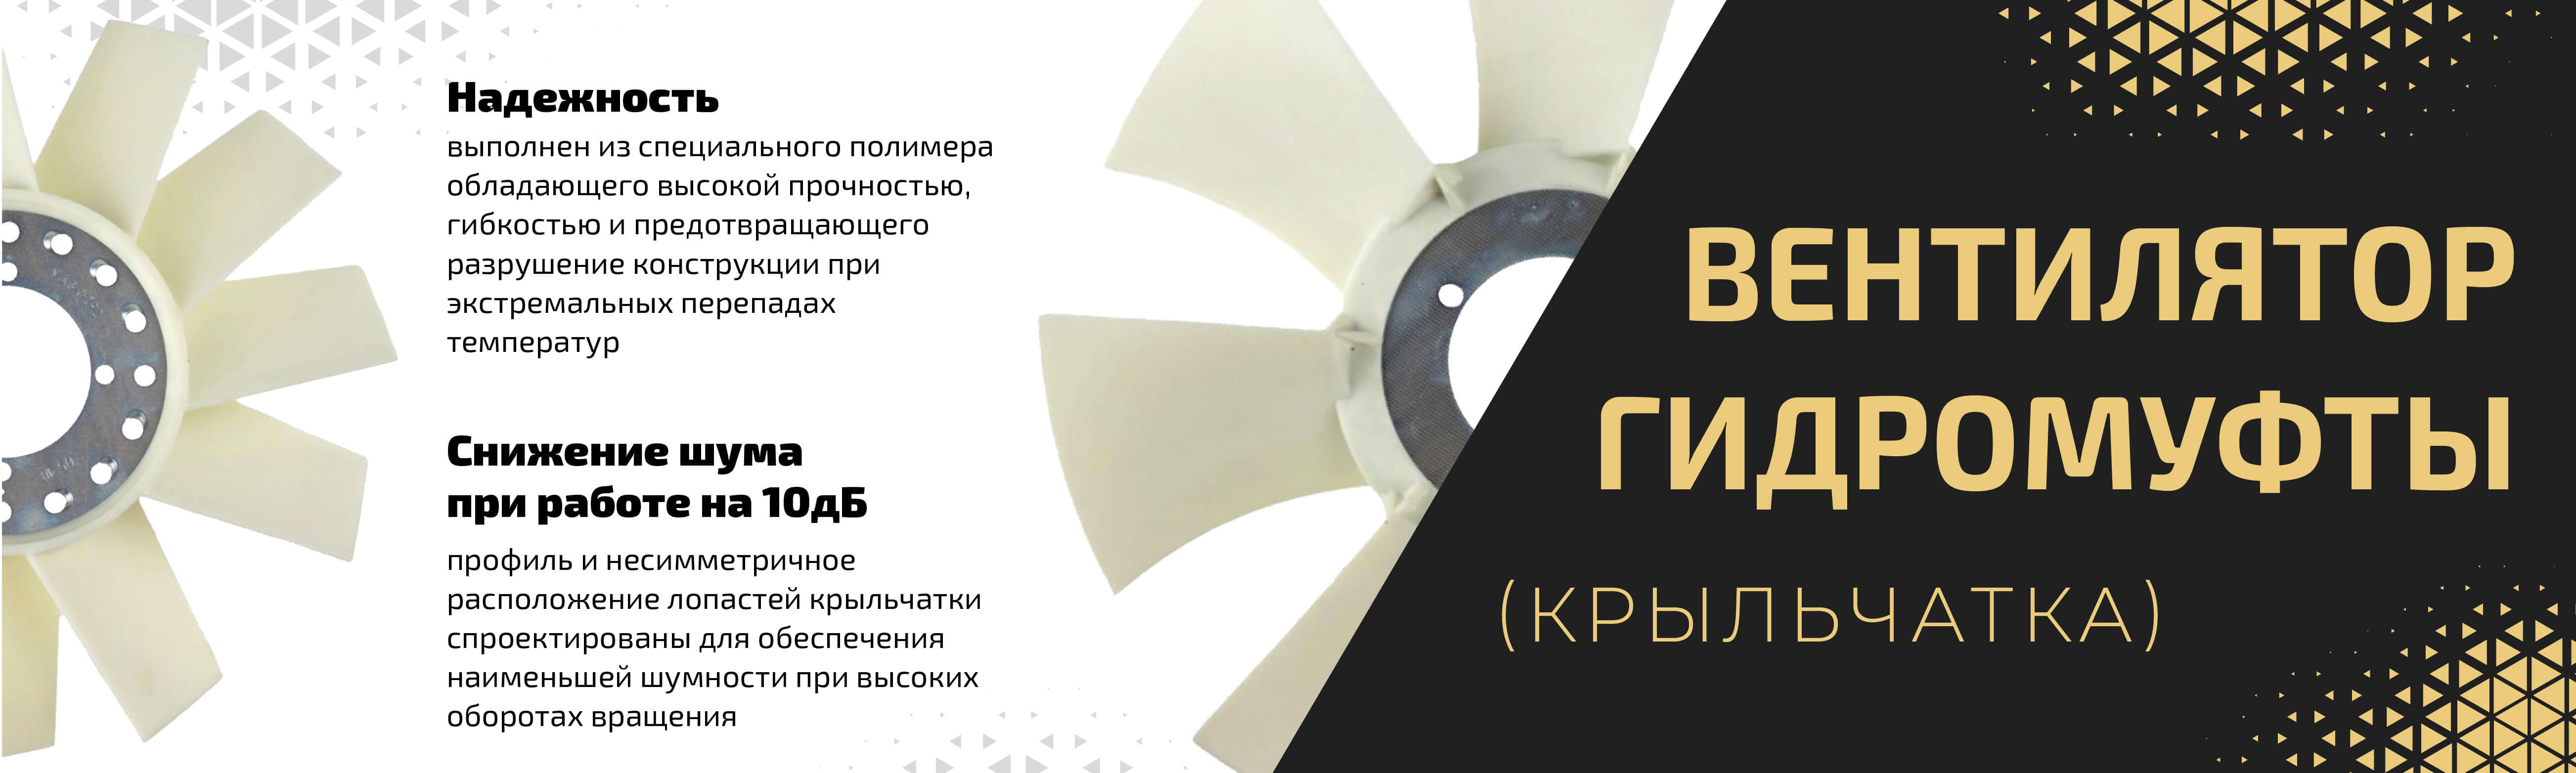 Вентиляторы и Гидромуфты — Купить для ГАЗ и УАЗ, цены в Metalpart.ru